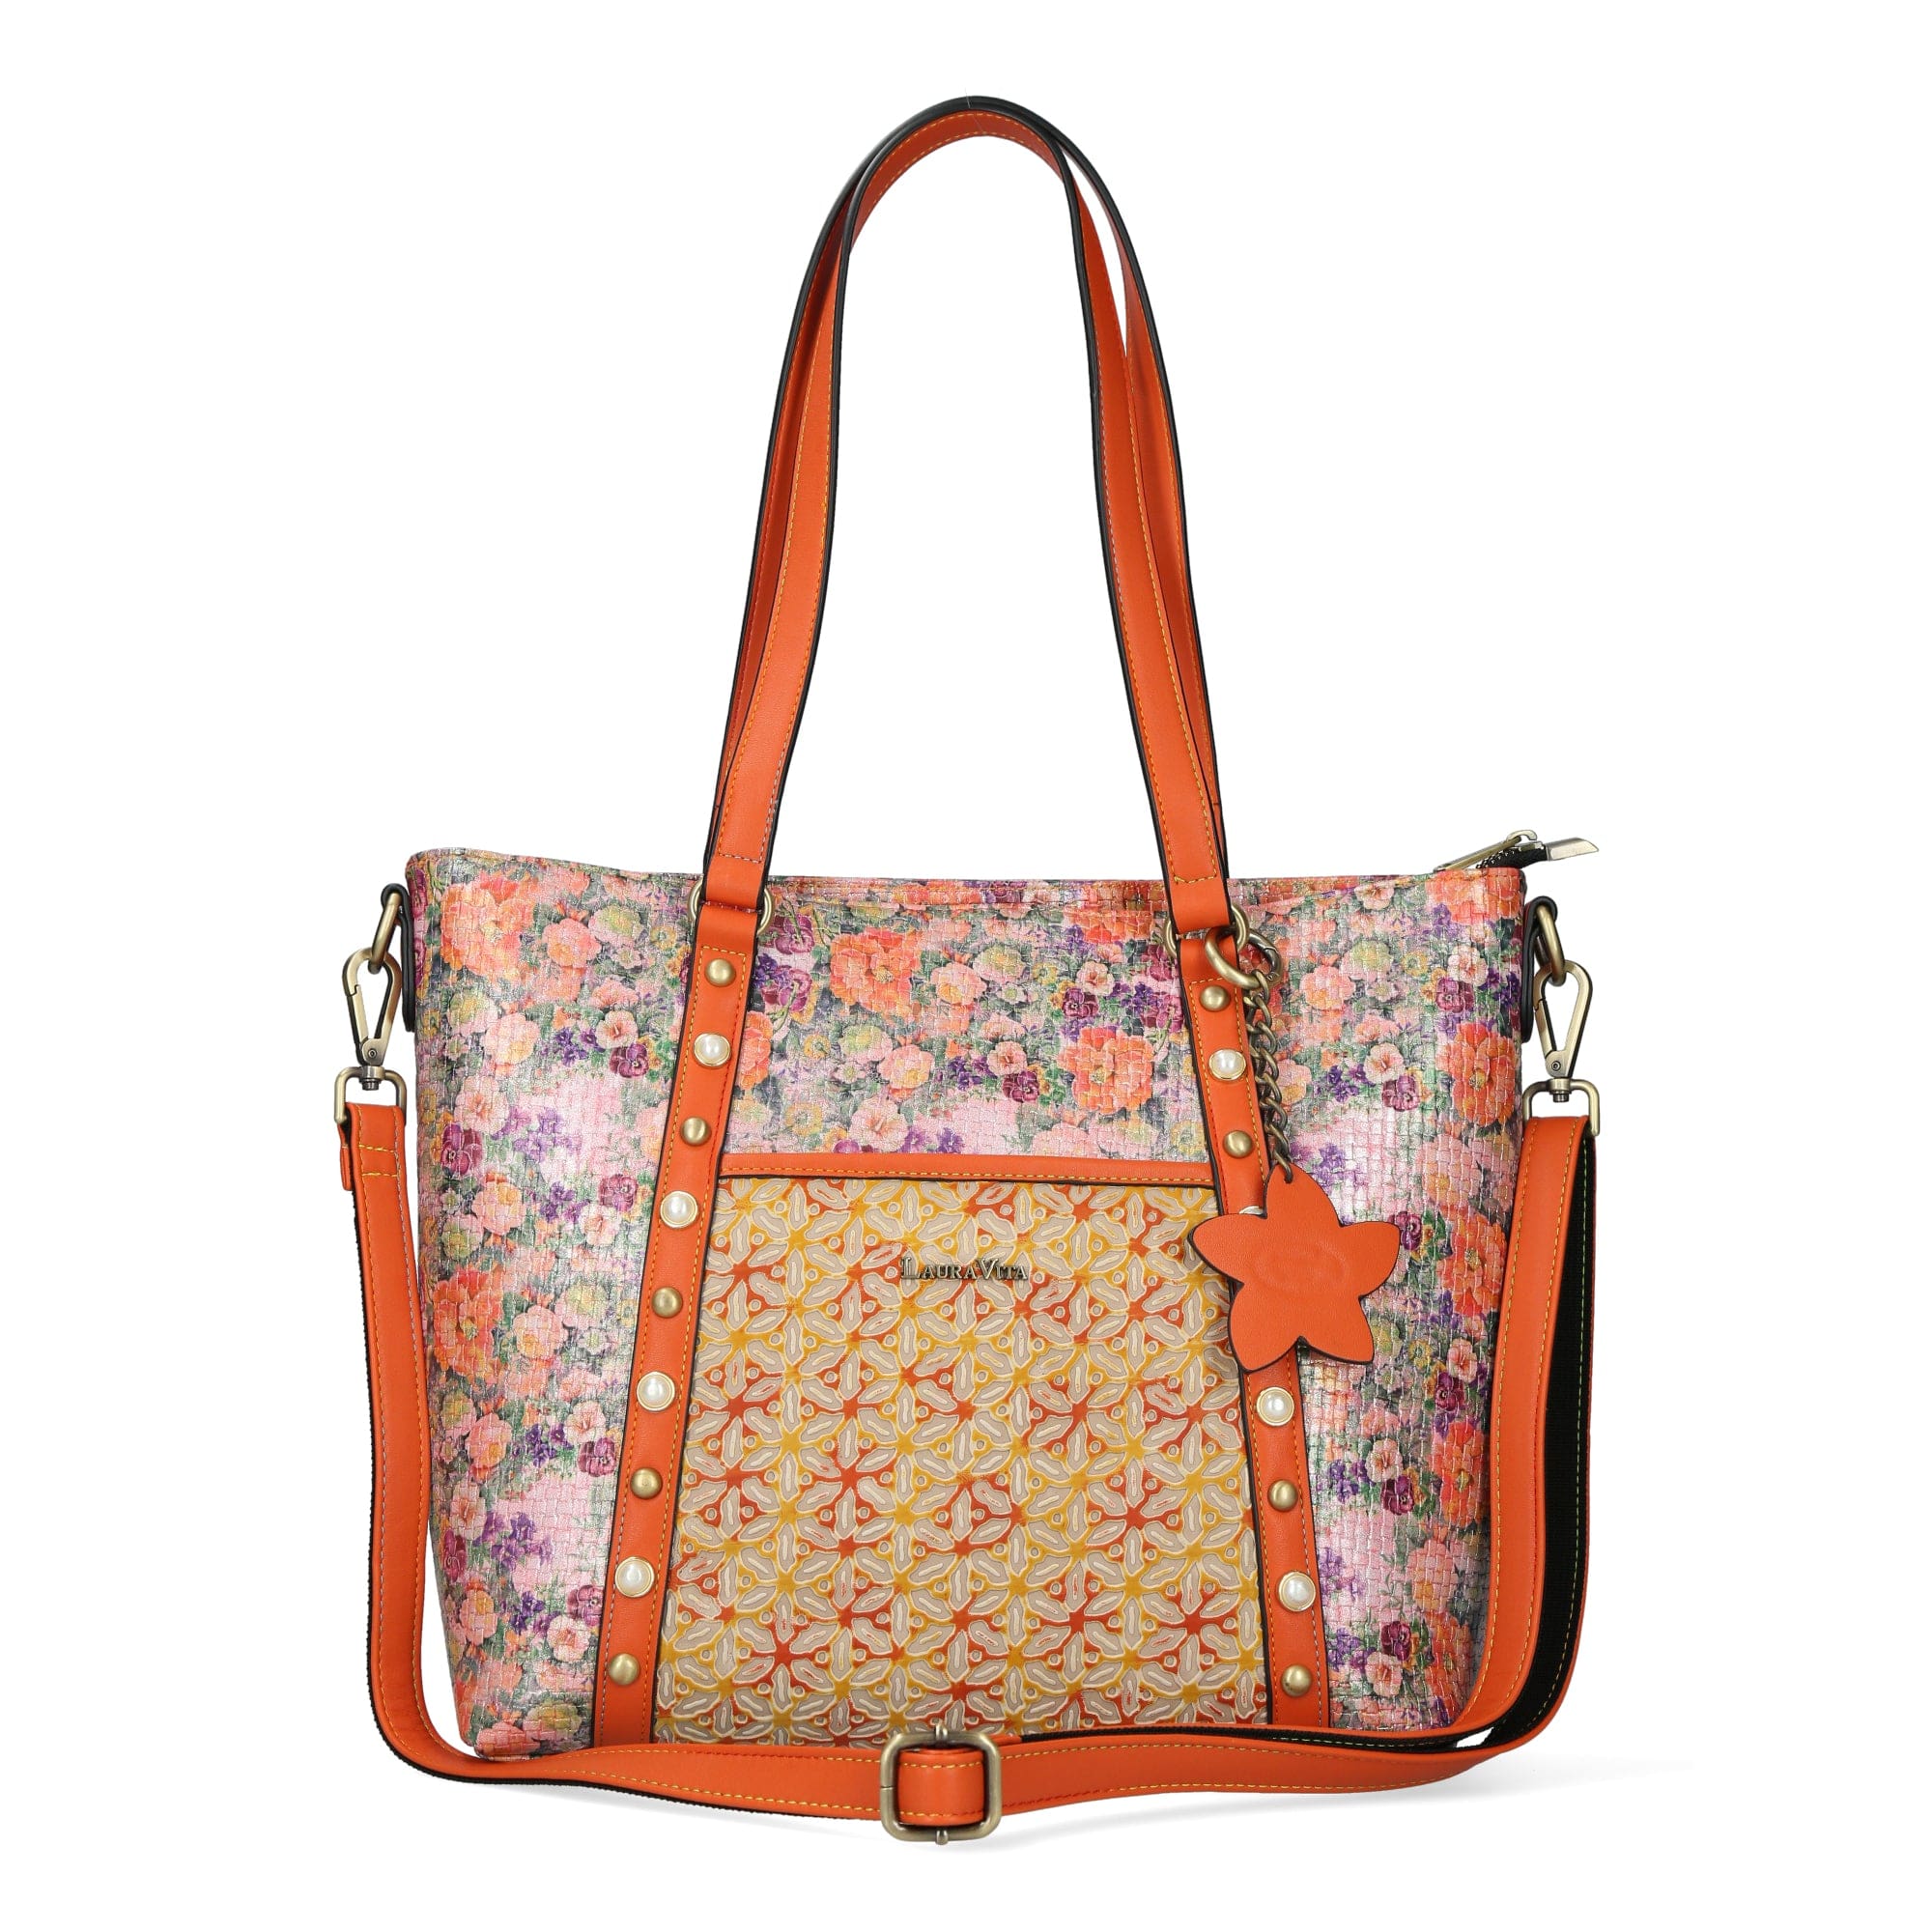 Taschen Handtasche 4810 - Orange - Taschen